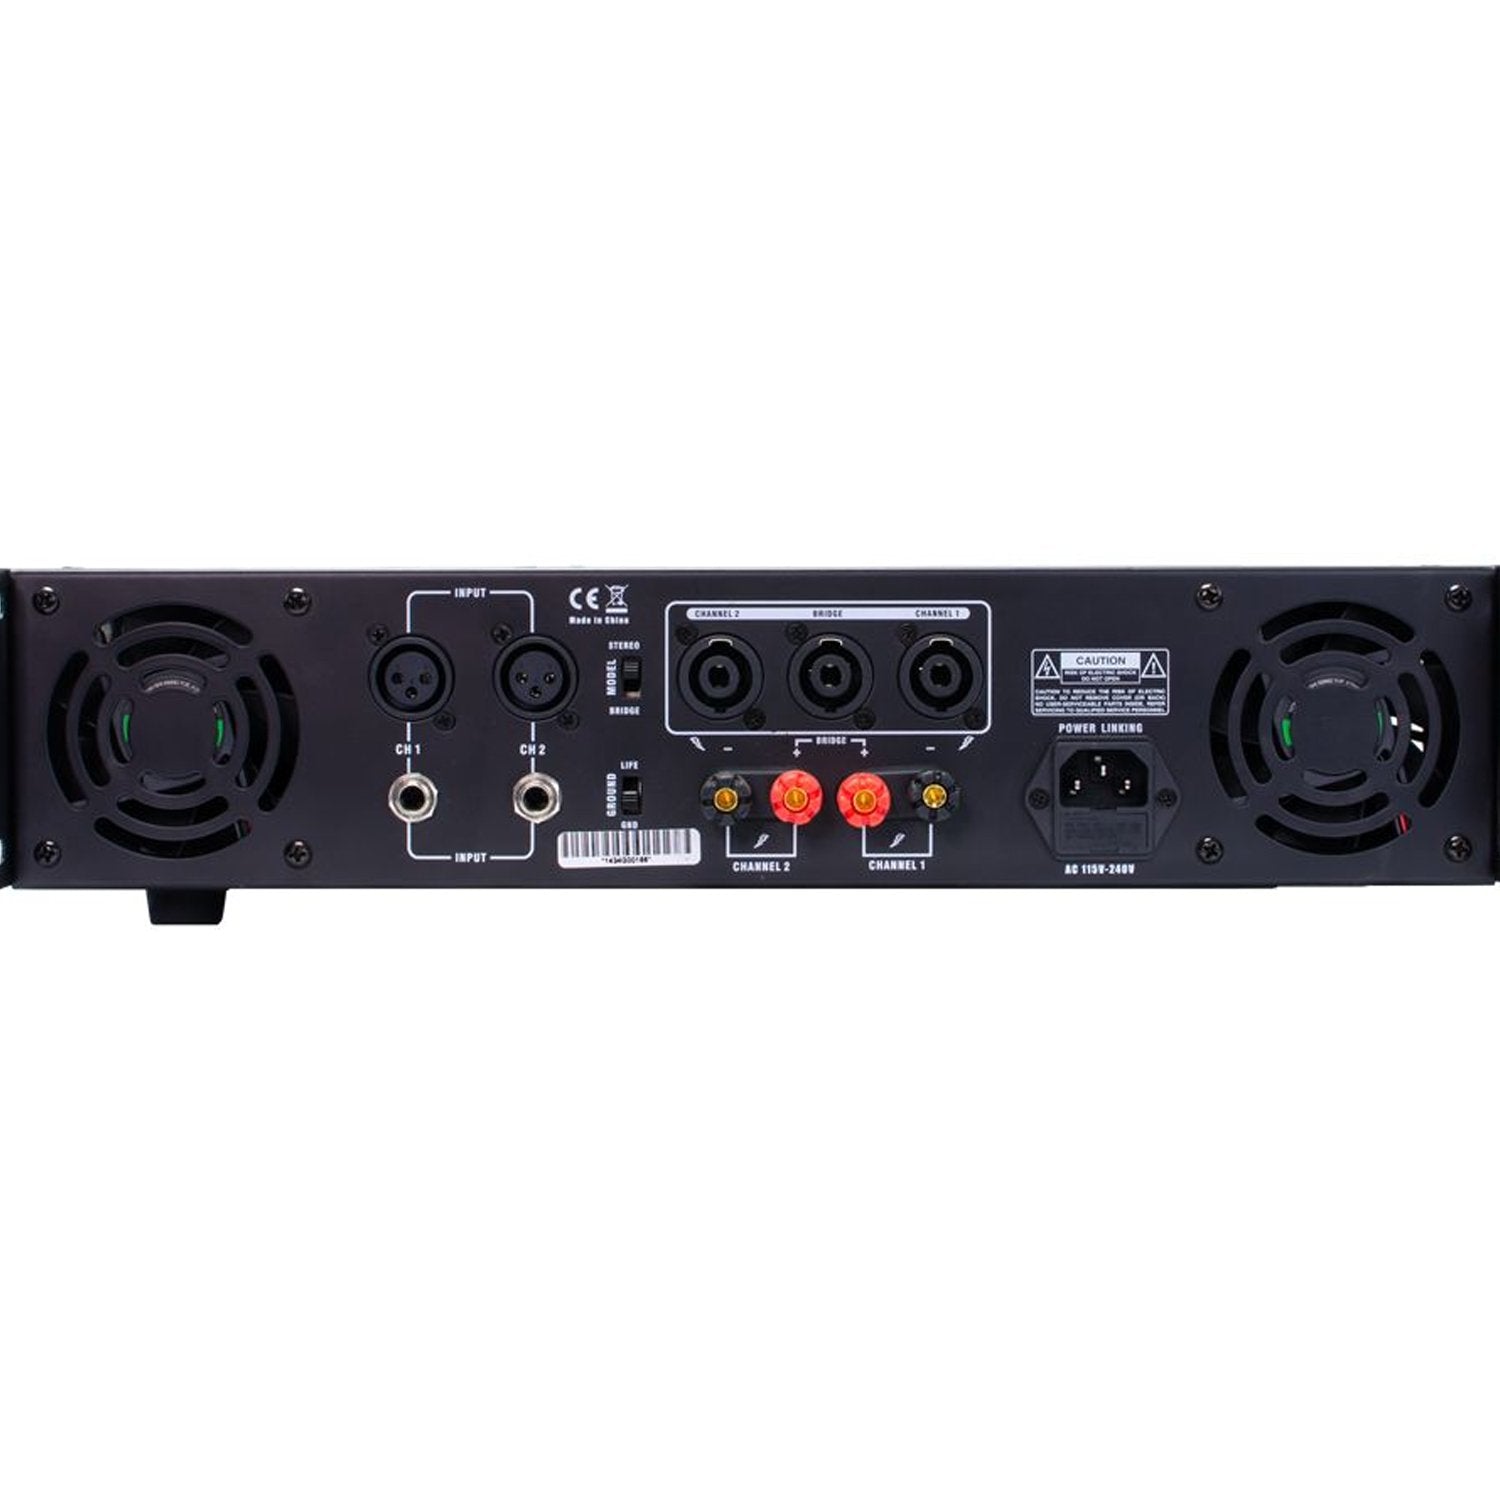 Gemini XGA-5000 Power Amplifier - DY Pro Audio